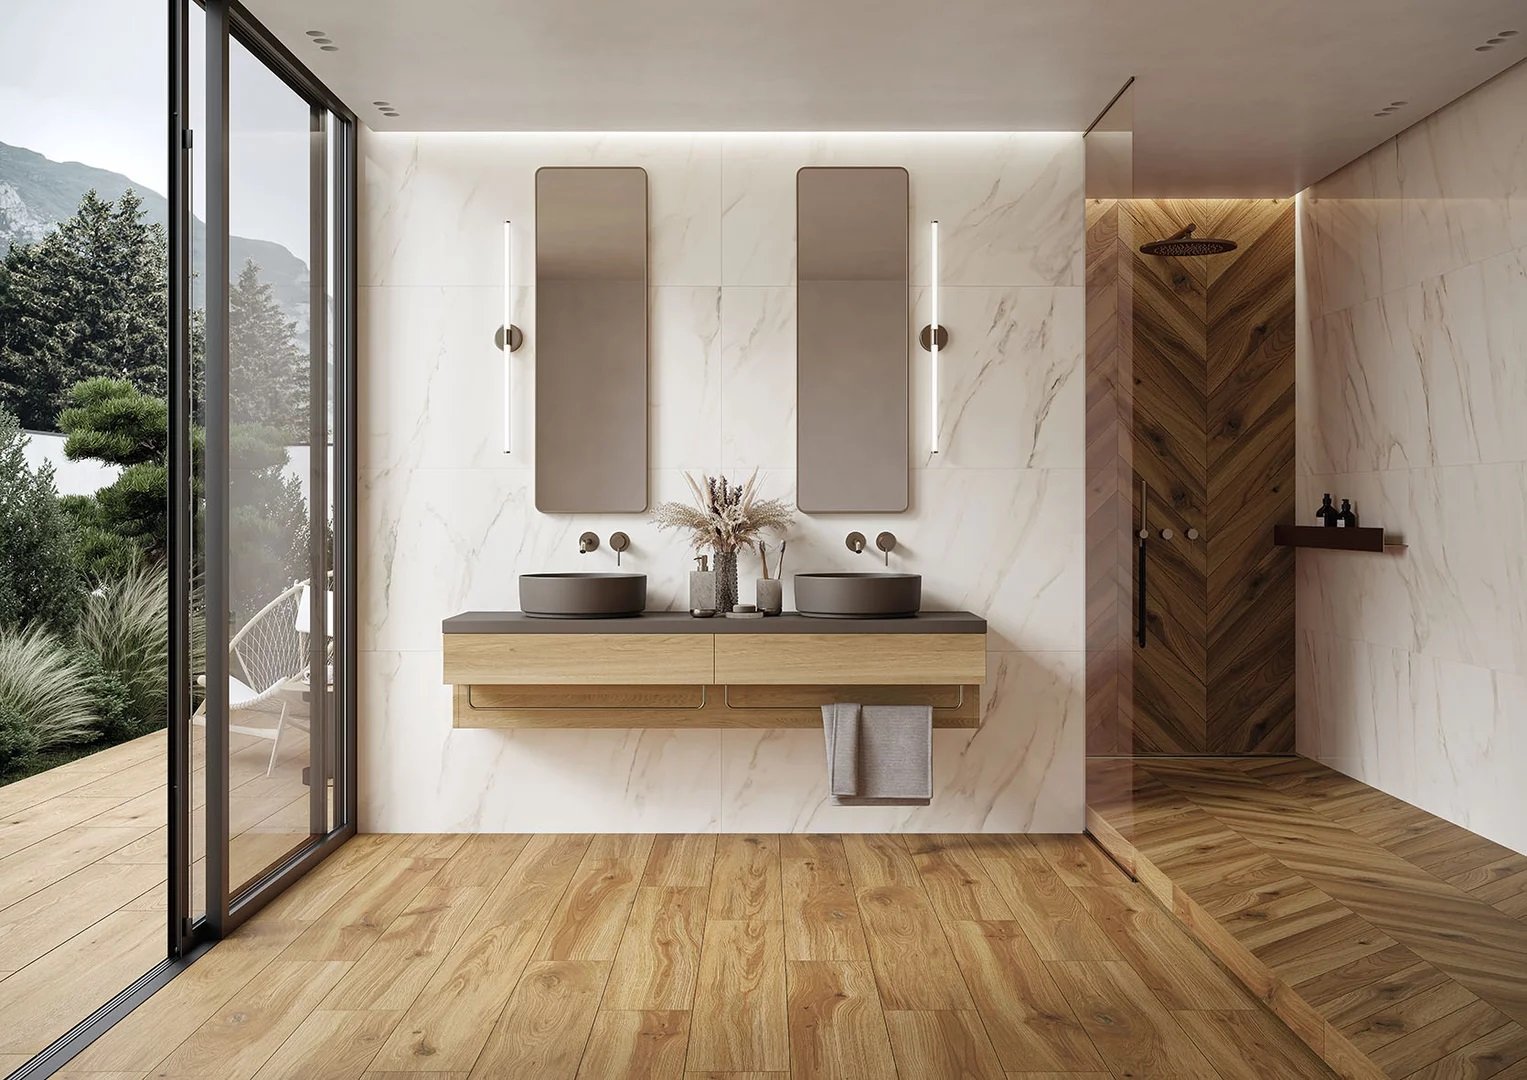 #Koupelna #Obytné prostory #dřevo #Moderní styl #hnědá #Extra velký formát #Matná dlažba #1000 - 1500 Kč/m2